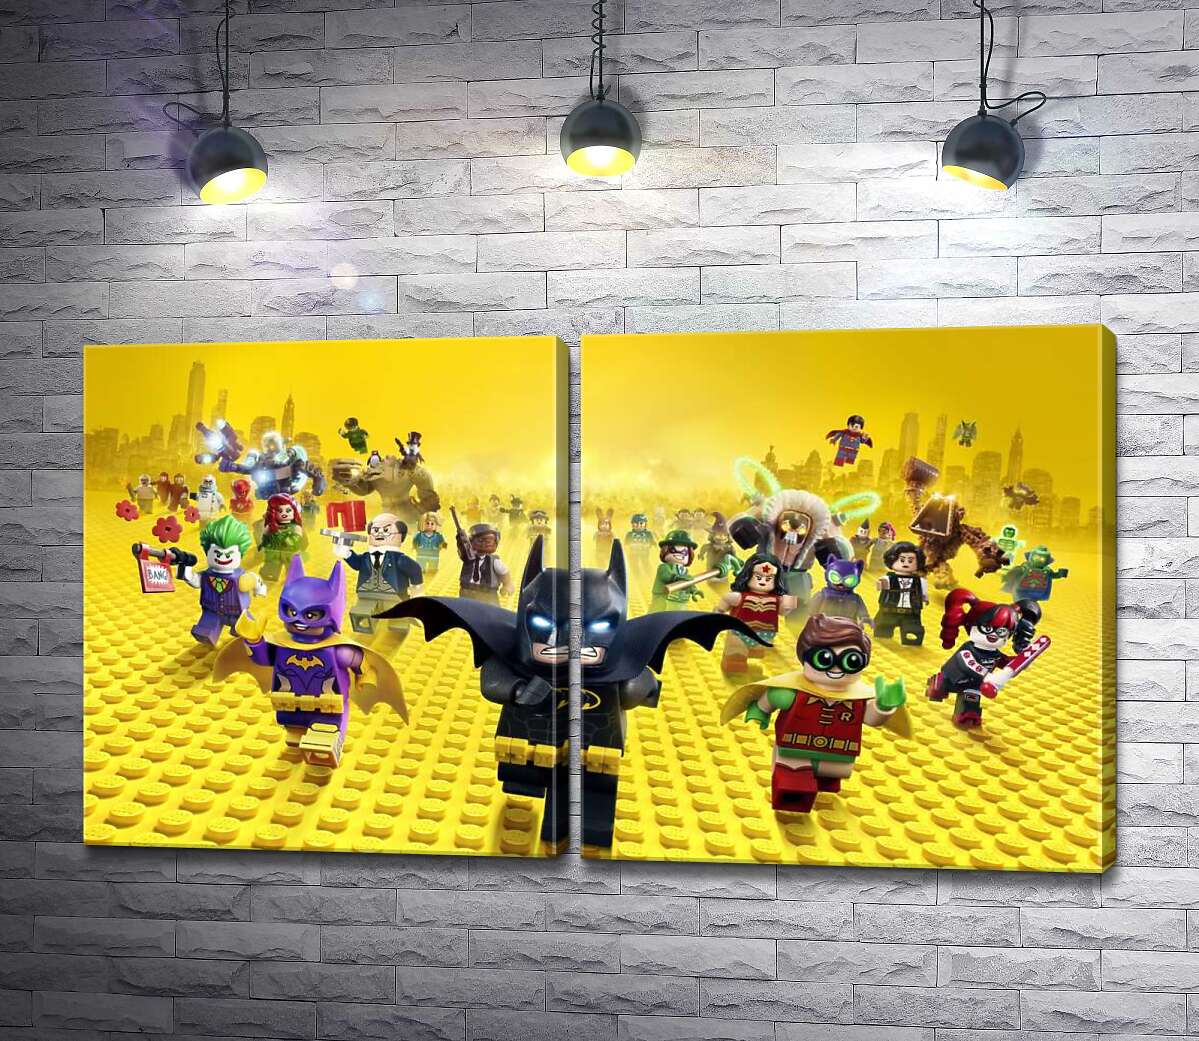 модульная картина Лего Бэтмен спешит спасать мир на постере к фильму "Lego Фильм: Бэтмен" (The Lego Batman Movie)